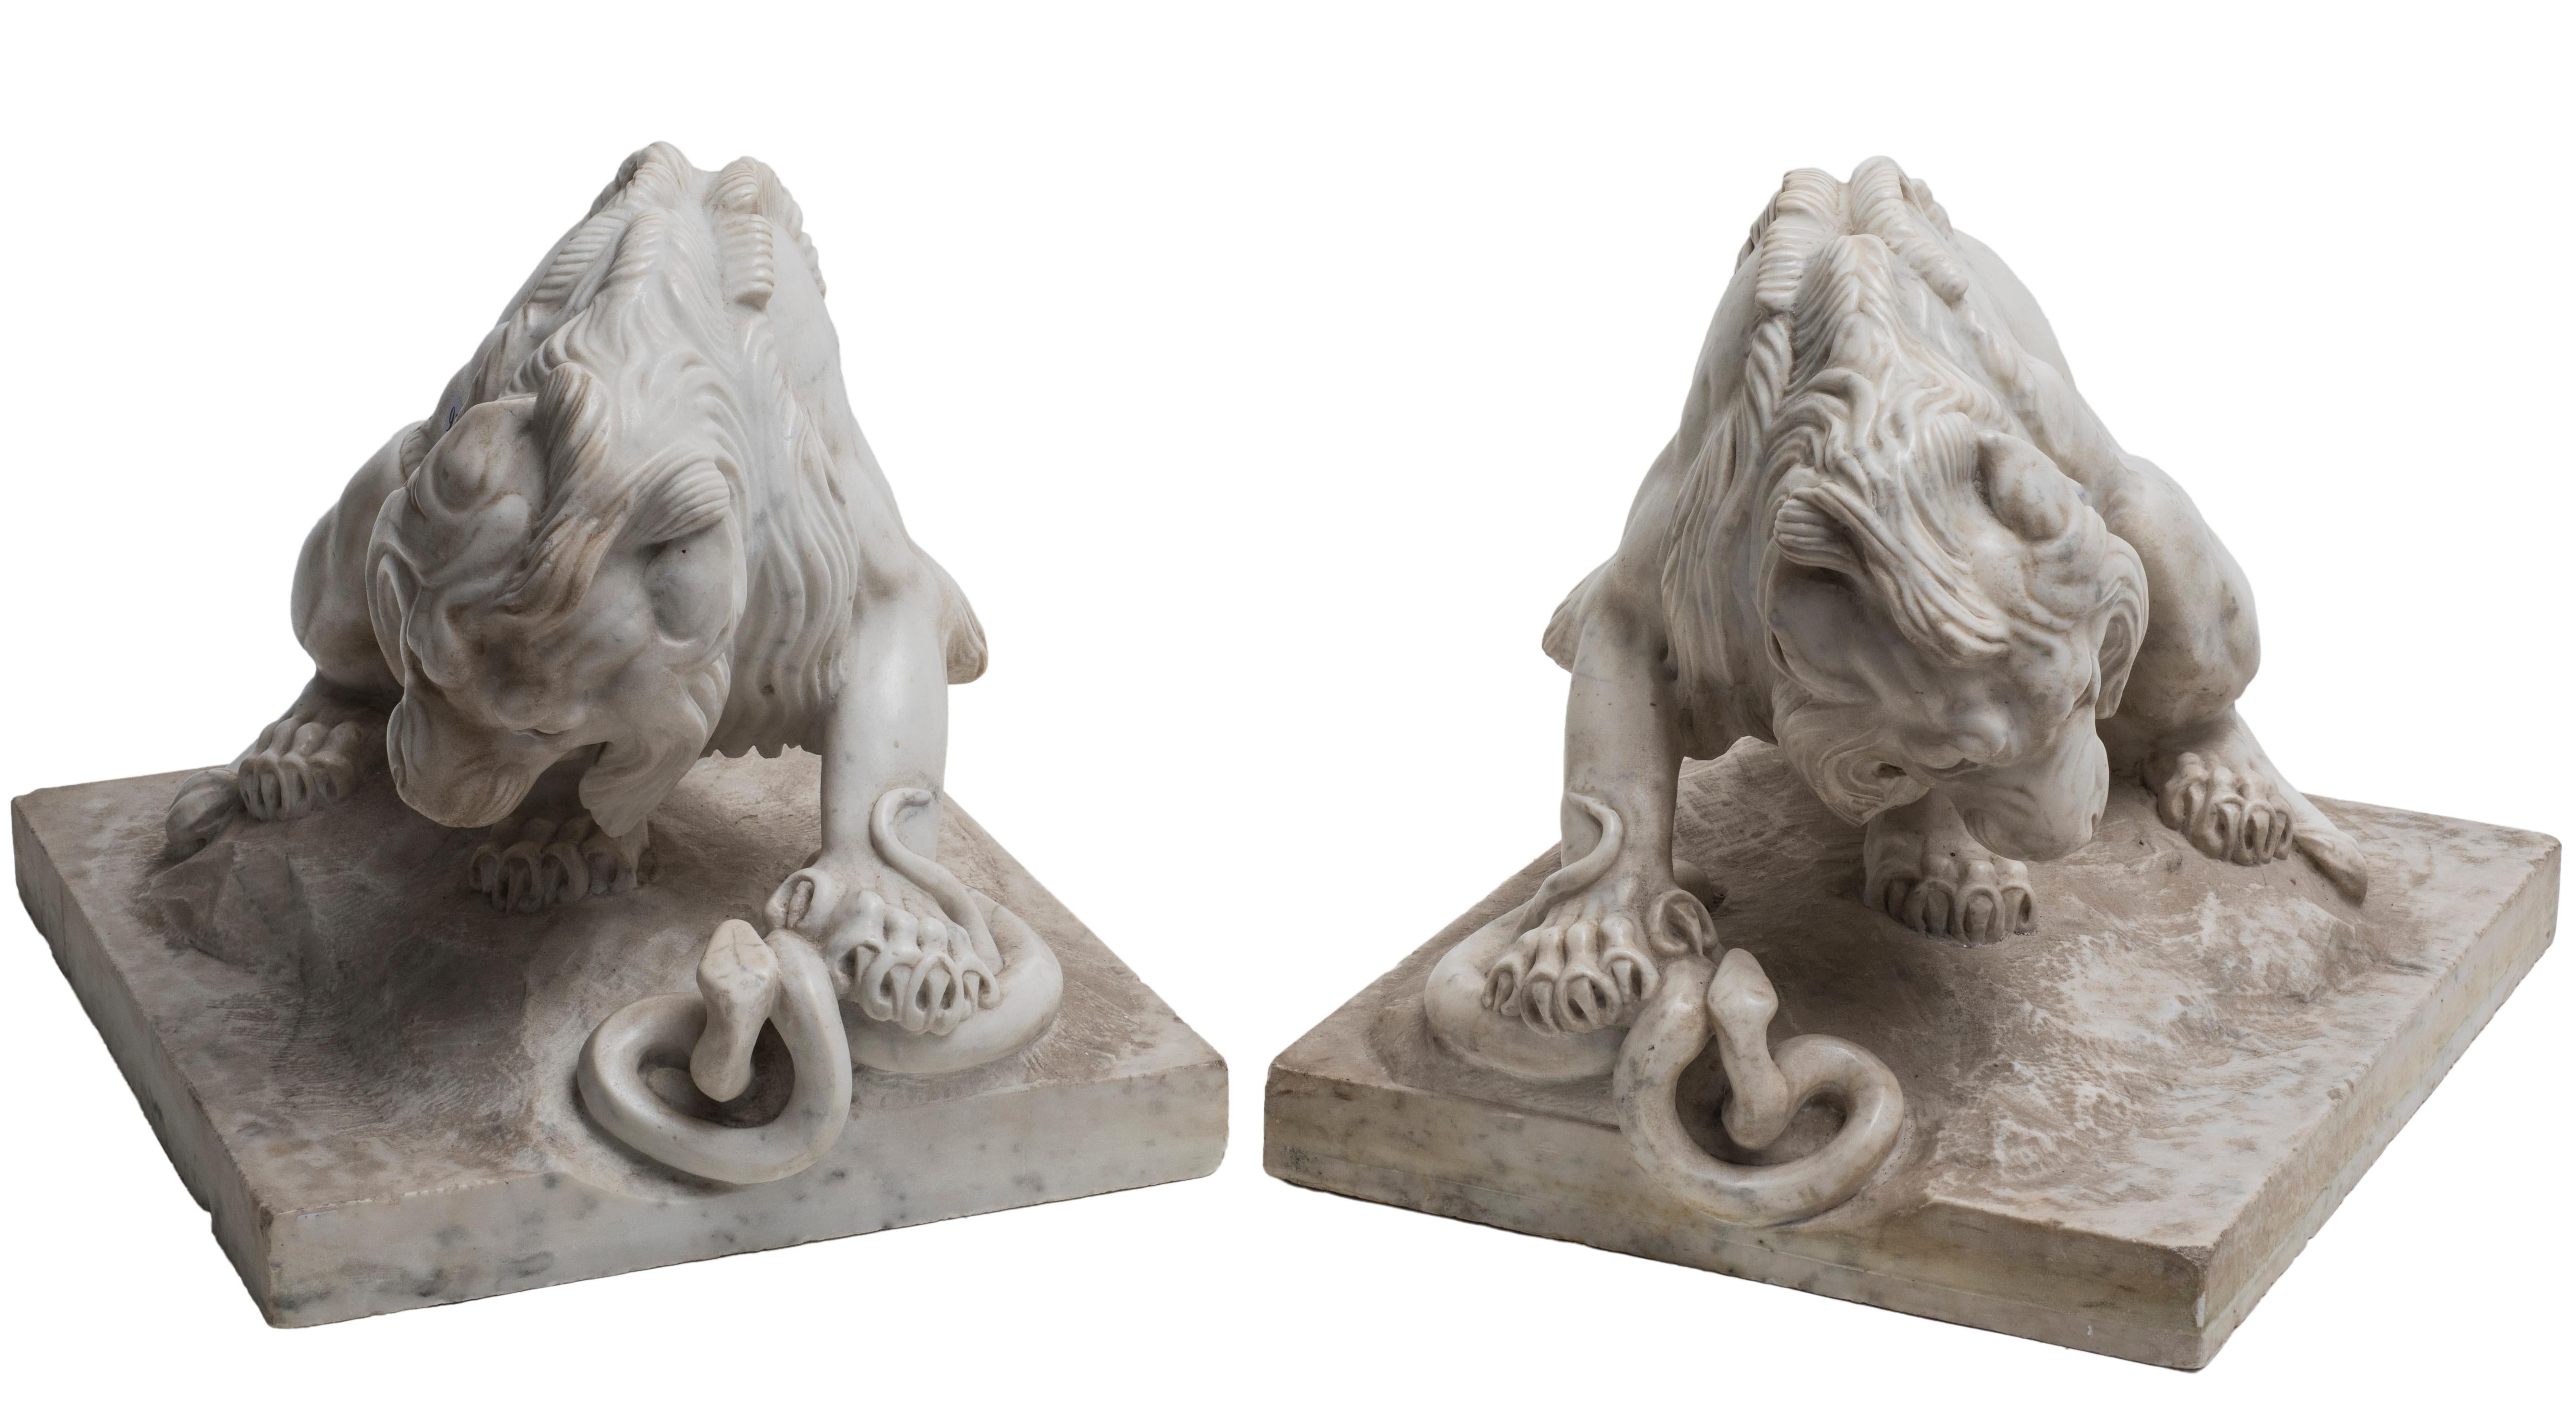 Les lions de marbre sont une paire de sculptures originales d'un artiste anonyme de l'École française réalisées au cours du XIXe siècle.

Des sculptures en marbre blanc représentant un couple de lions luttant contre un serpent. Bon état, sauf de